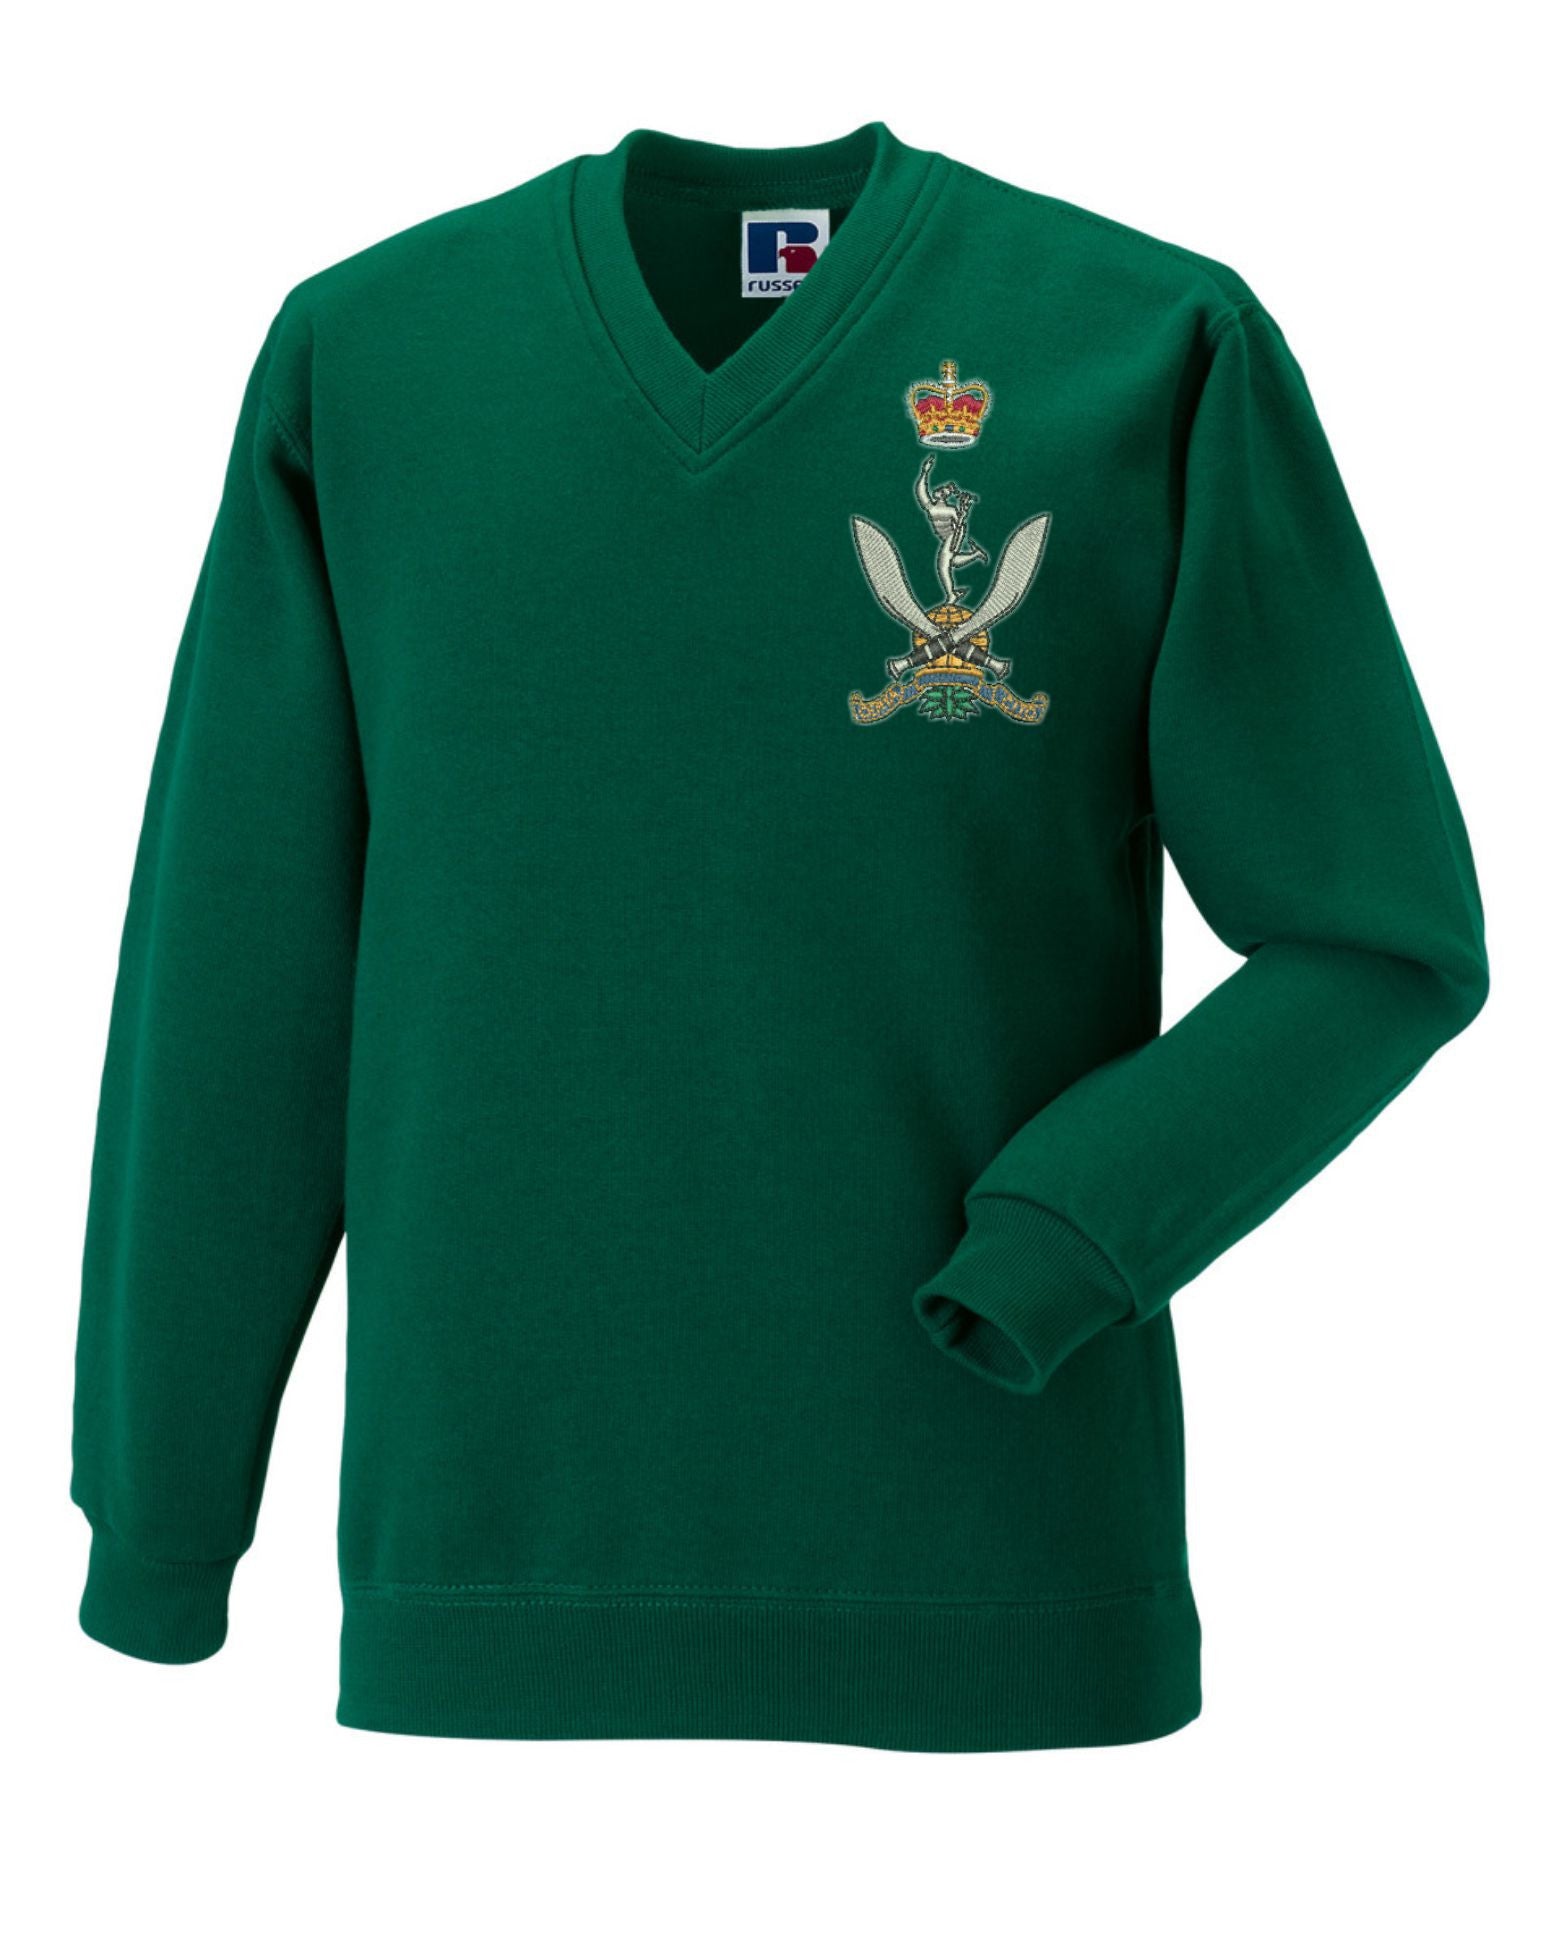 Queen's Gurkha Signals V Neck Sweatshirts